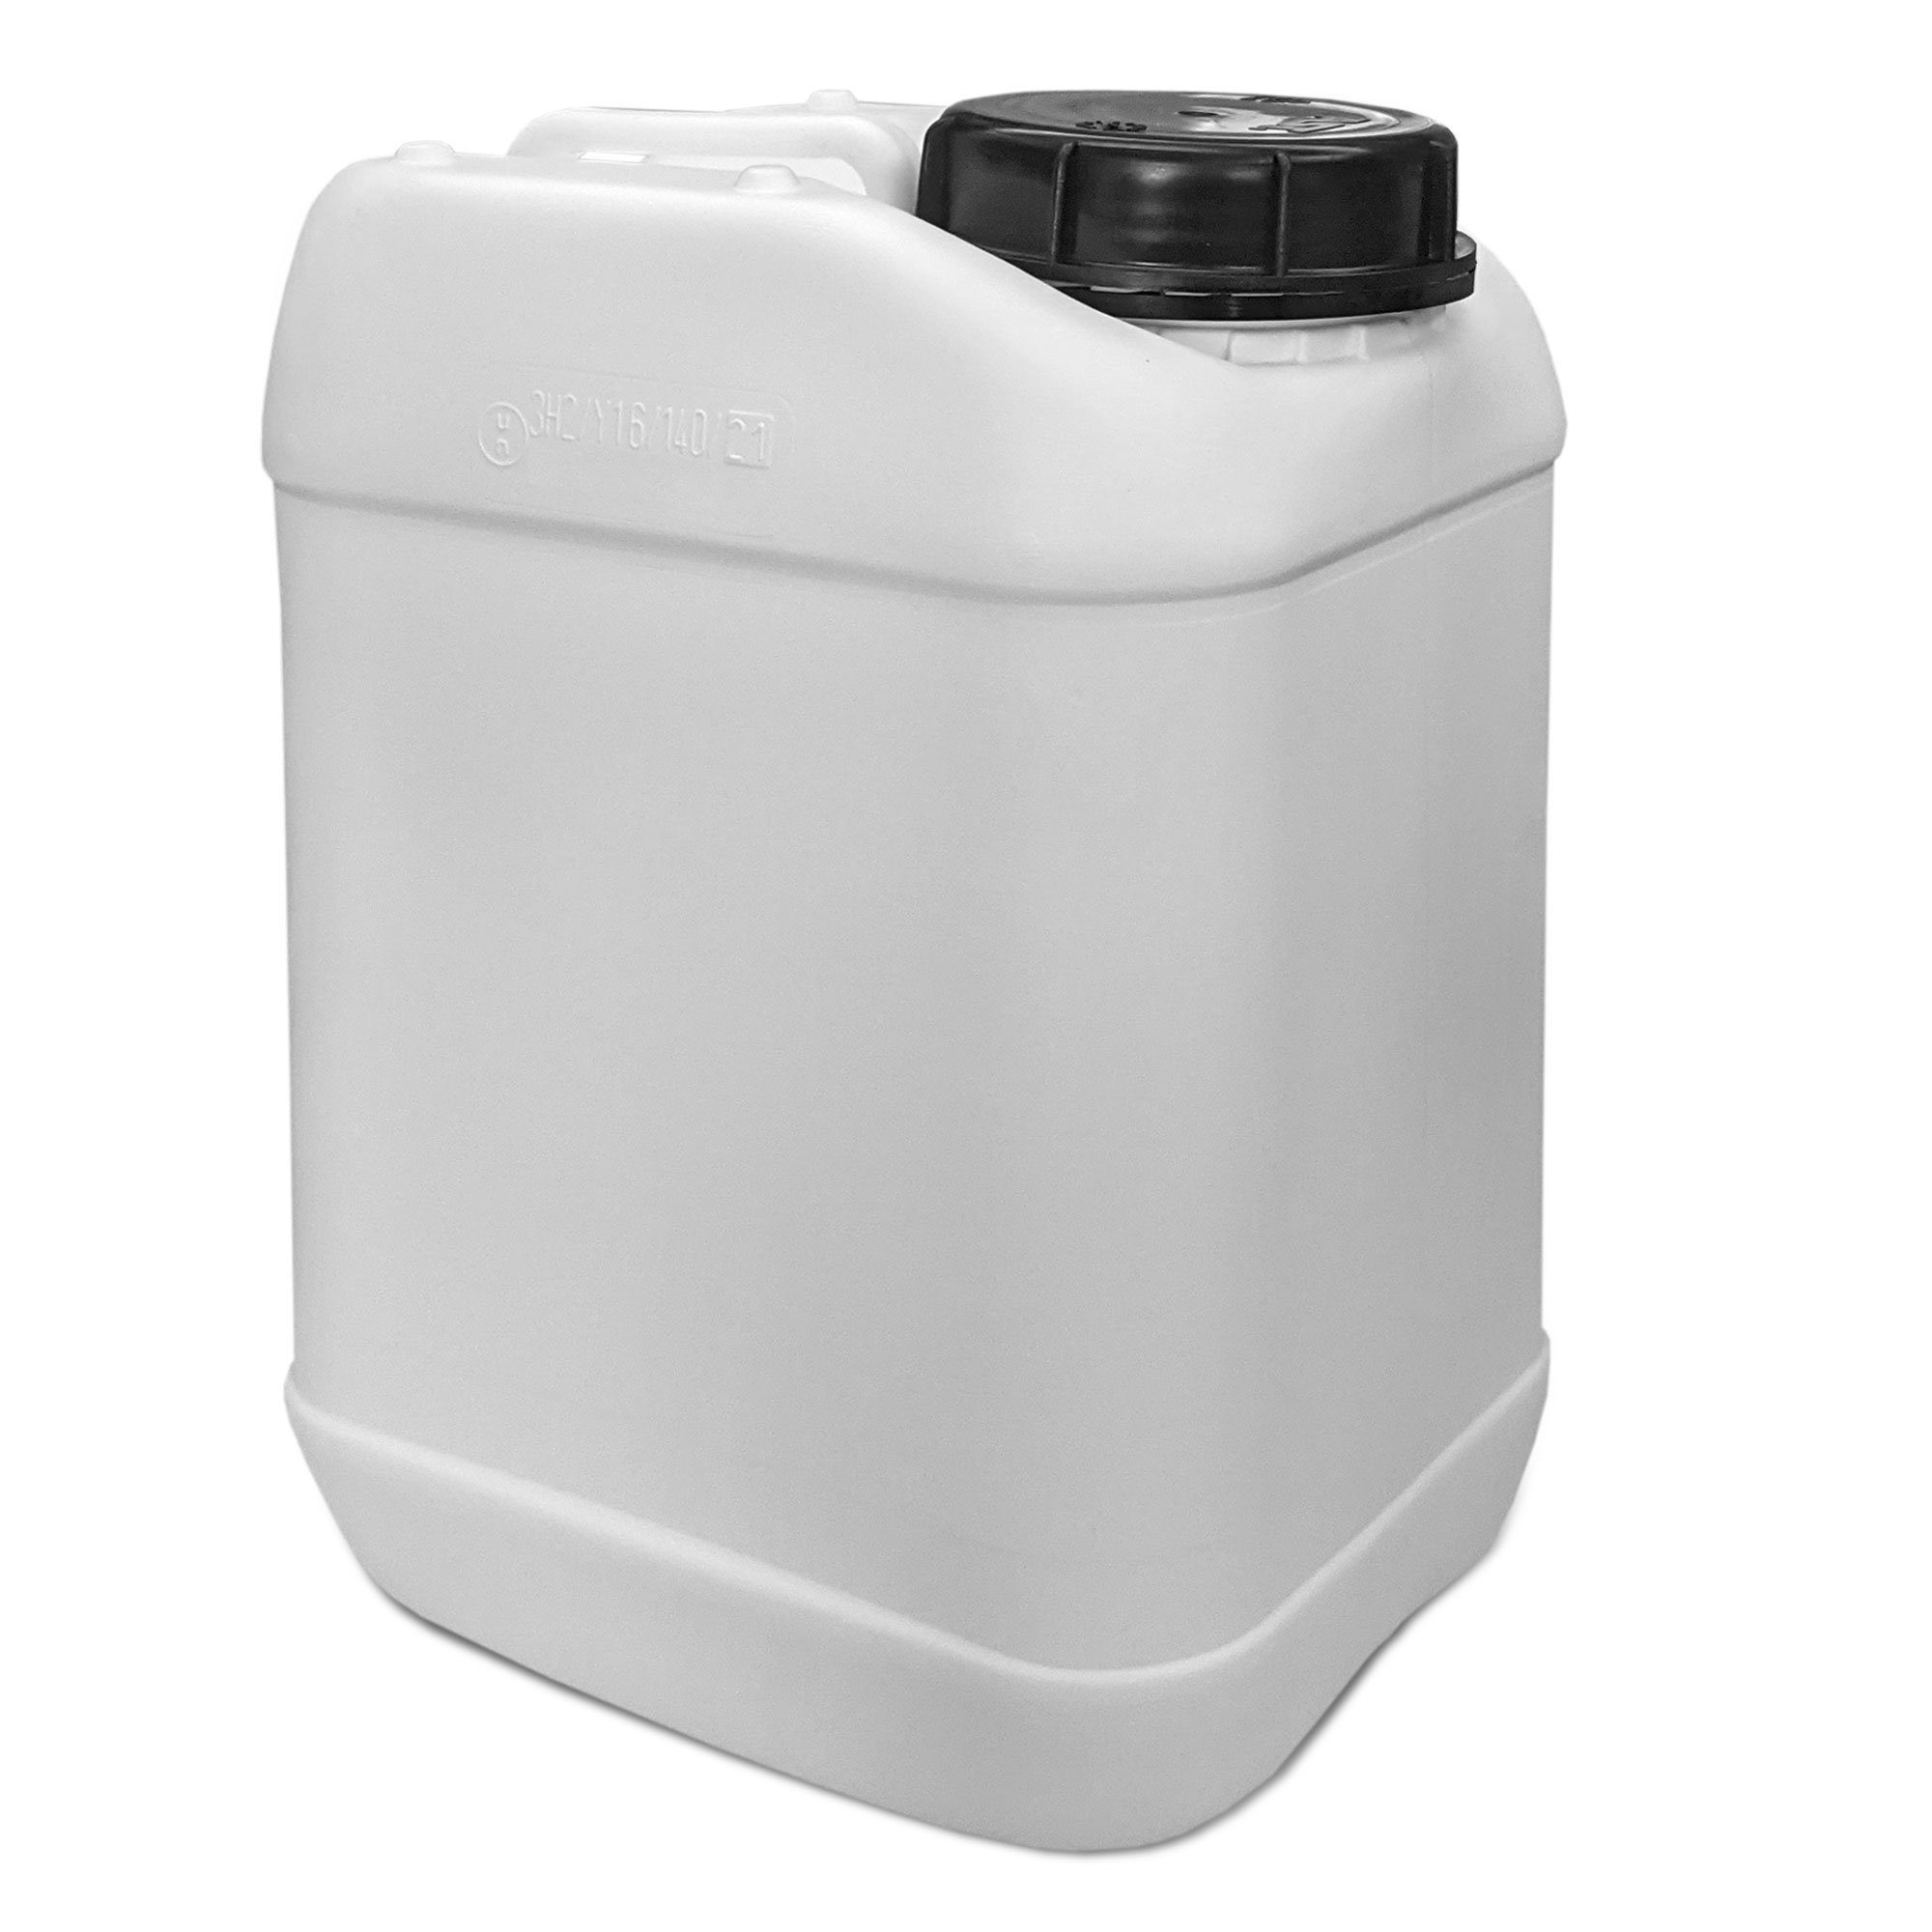 Plasteo Kanister 10L Weithals Getränke- Wasserkanister Weiß (1 St)